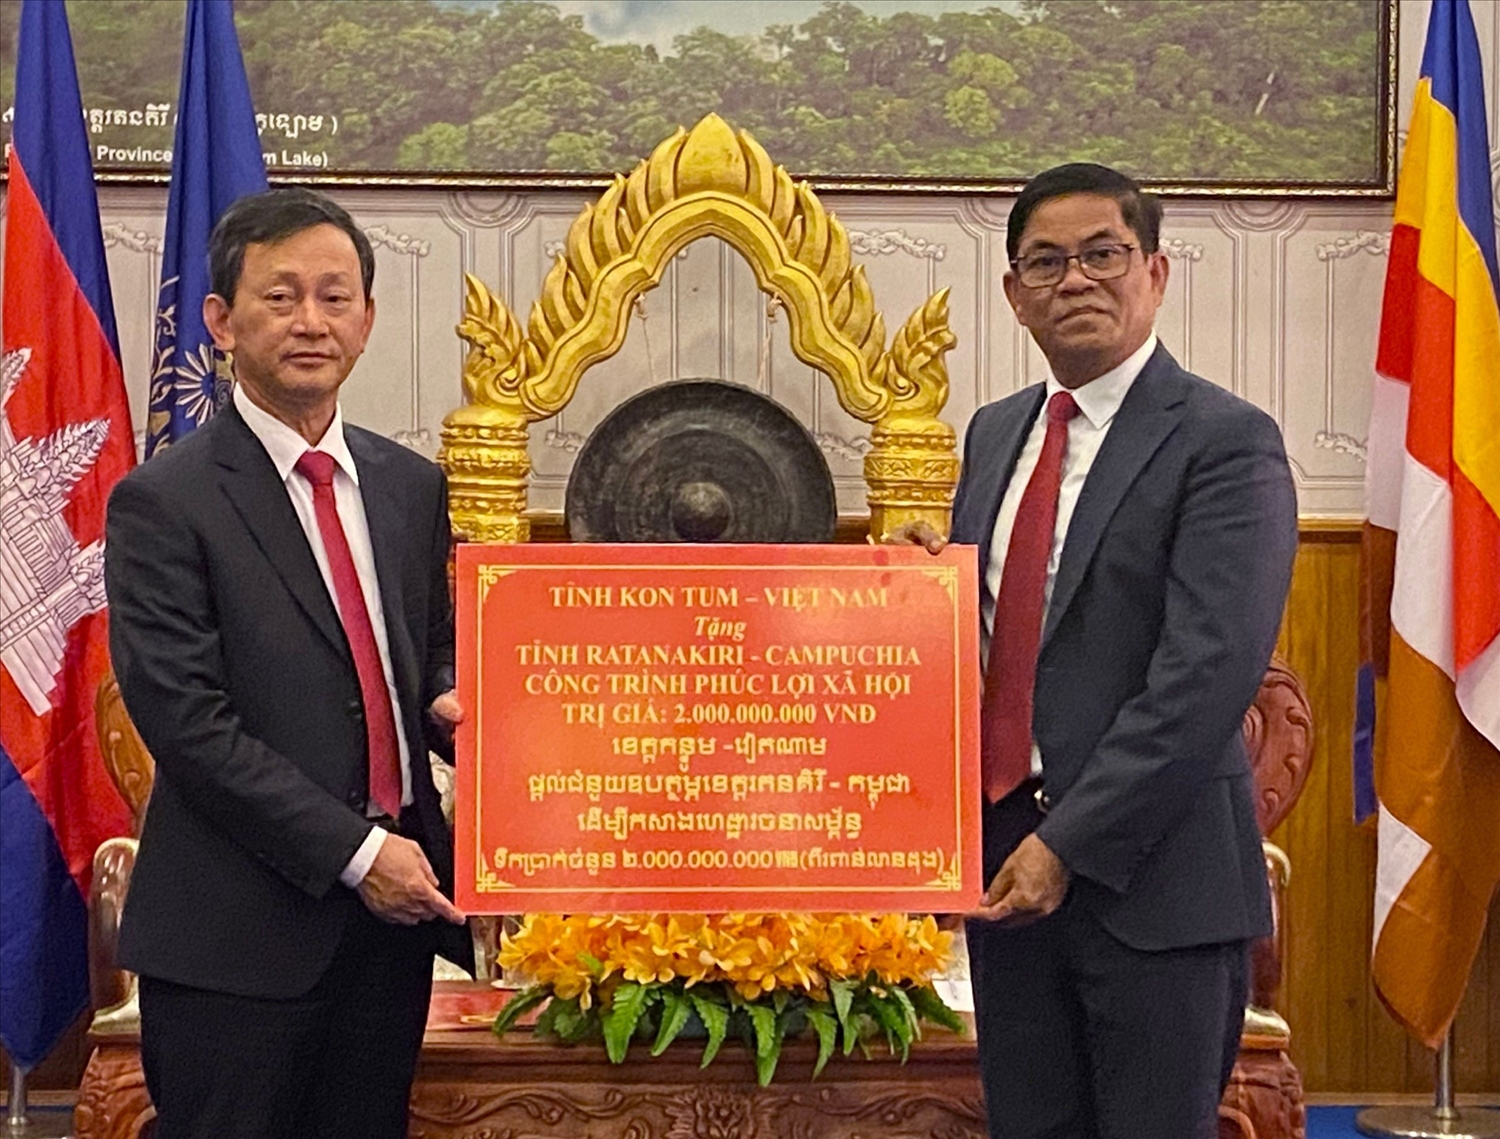 Bí thư Tỉnh ủy Kon Tum Dương Văn Trang (bên trái) trao tặng cho tỉnh Ratanakiri (Campuchia) 1 công trình phúc lợi xã hội trị giá 2 tỷ đồng.